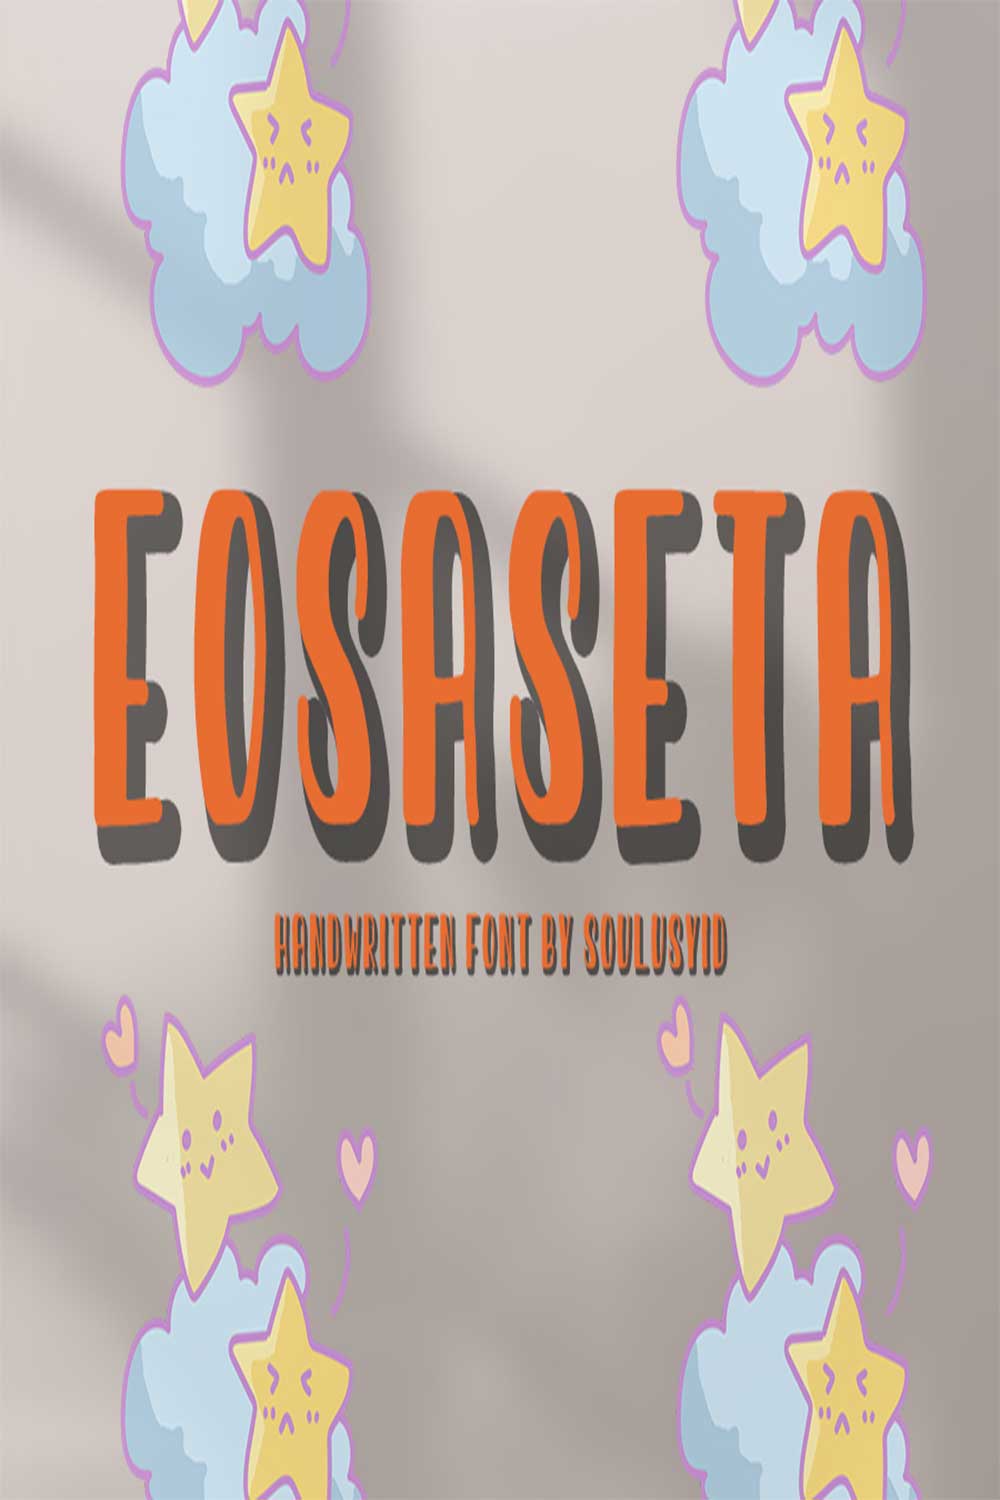 Eosaseta pinterest preview image.